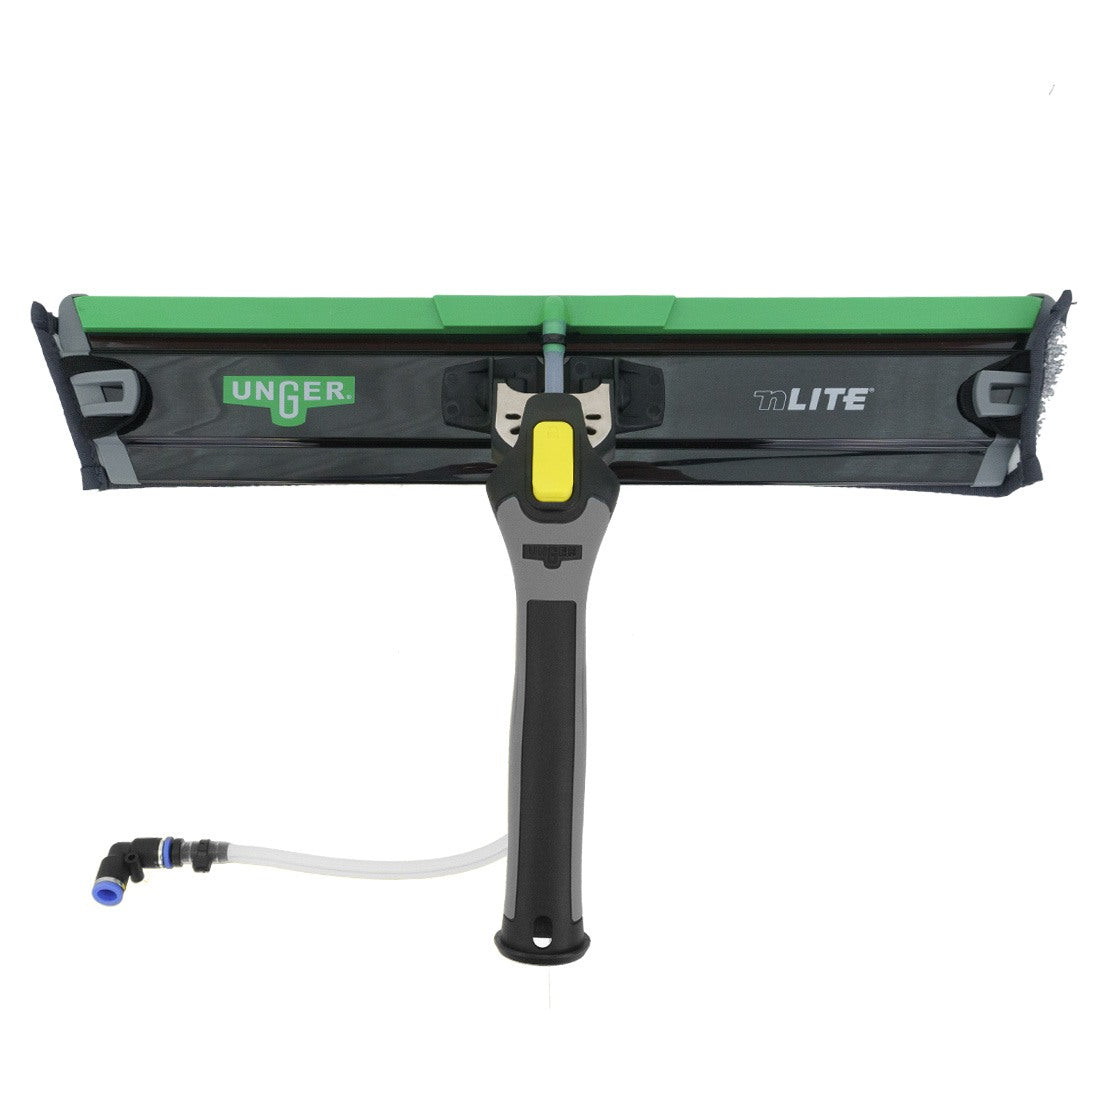 Unger nLITE PowerPad Complete Top View